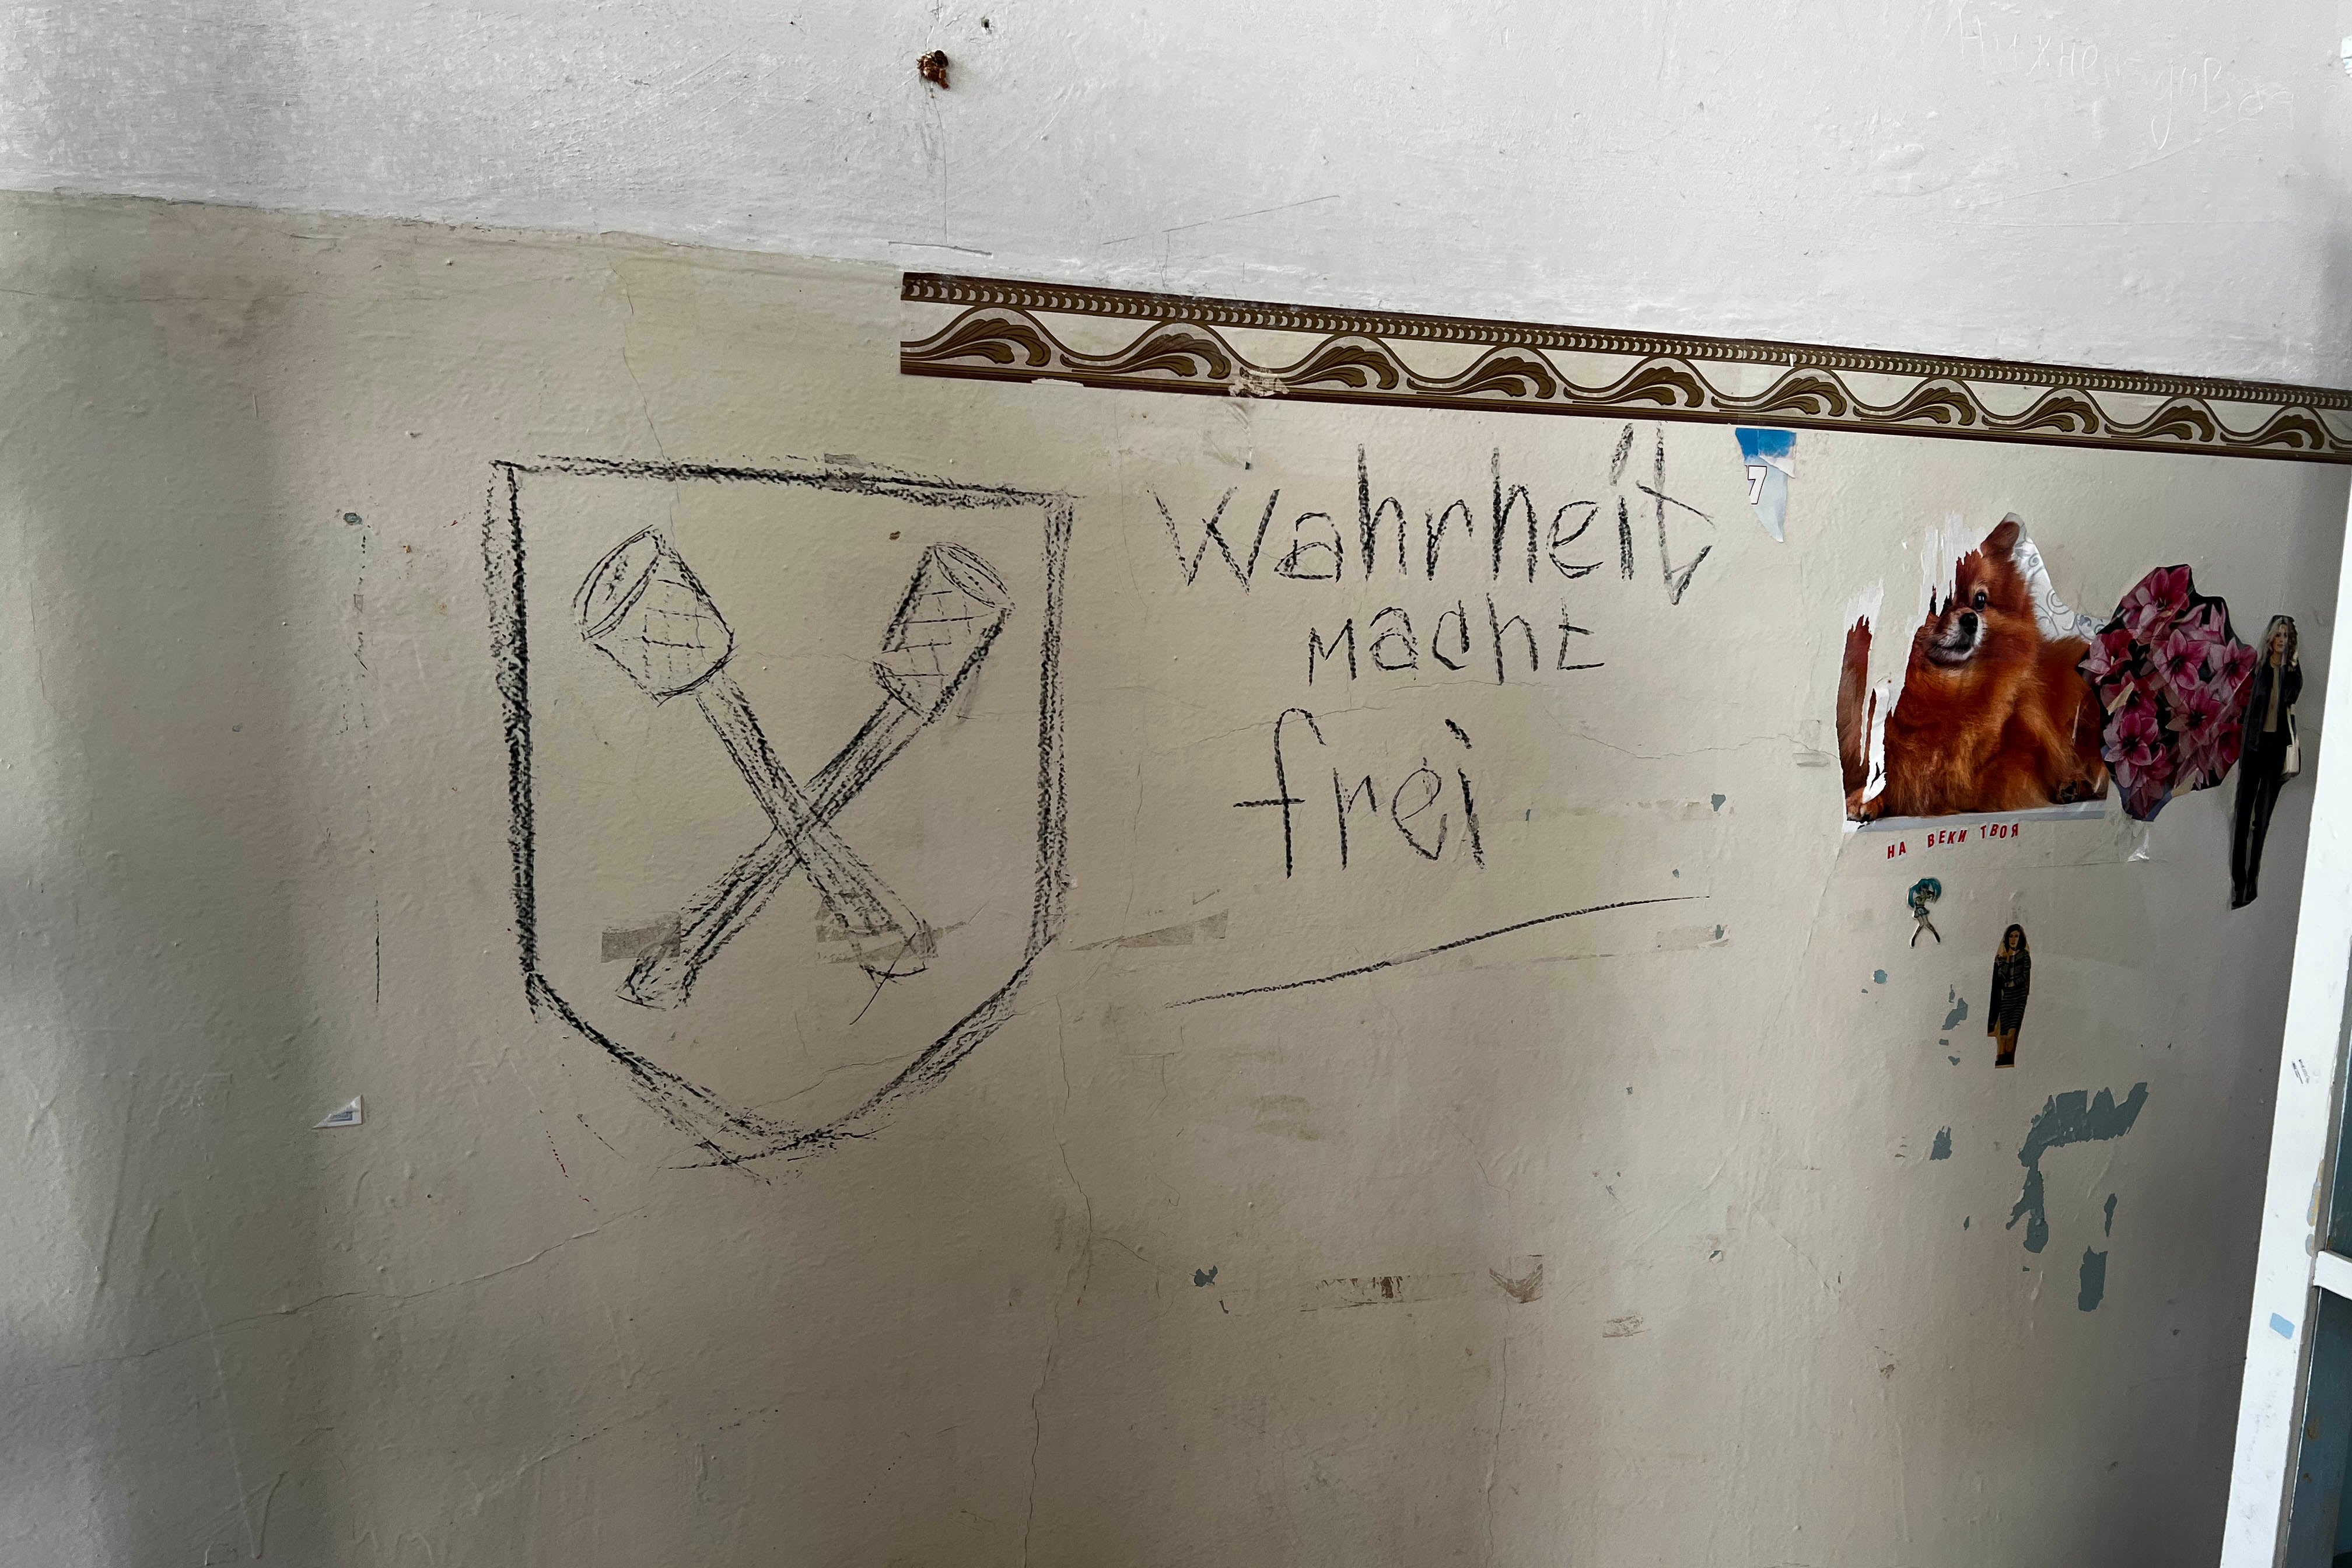 Les mots allemands « Wahreit macht frei » (« La vérité rend libre ») ont été inscrits sur le mur d’une salle de la Polyclinique de la gare municipale, à Izioum, en Ukraine. L’emblème dessiné à gauche semble représenter des grenades à manche croisées, symbole de la brigade « Dirlewanger », une brigade SS allemande de la Seconde Guerre mondiale. Photo prise le 22 septembre 2022.